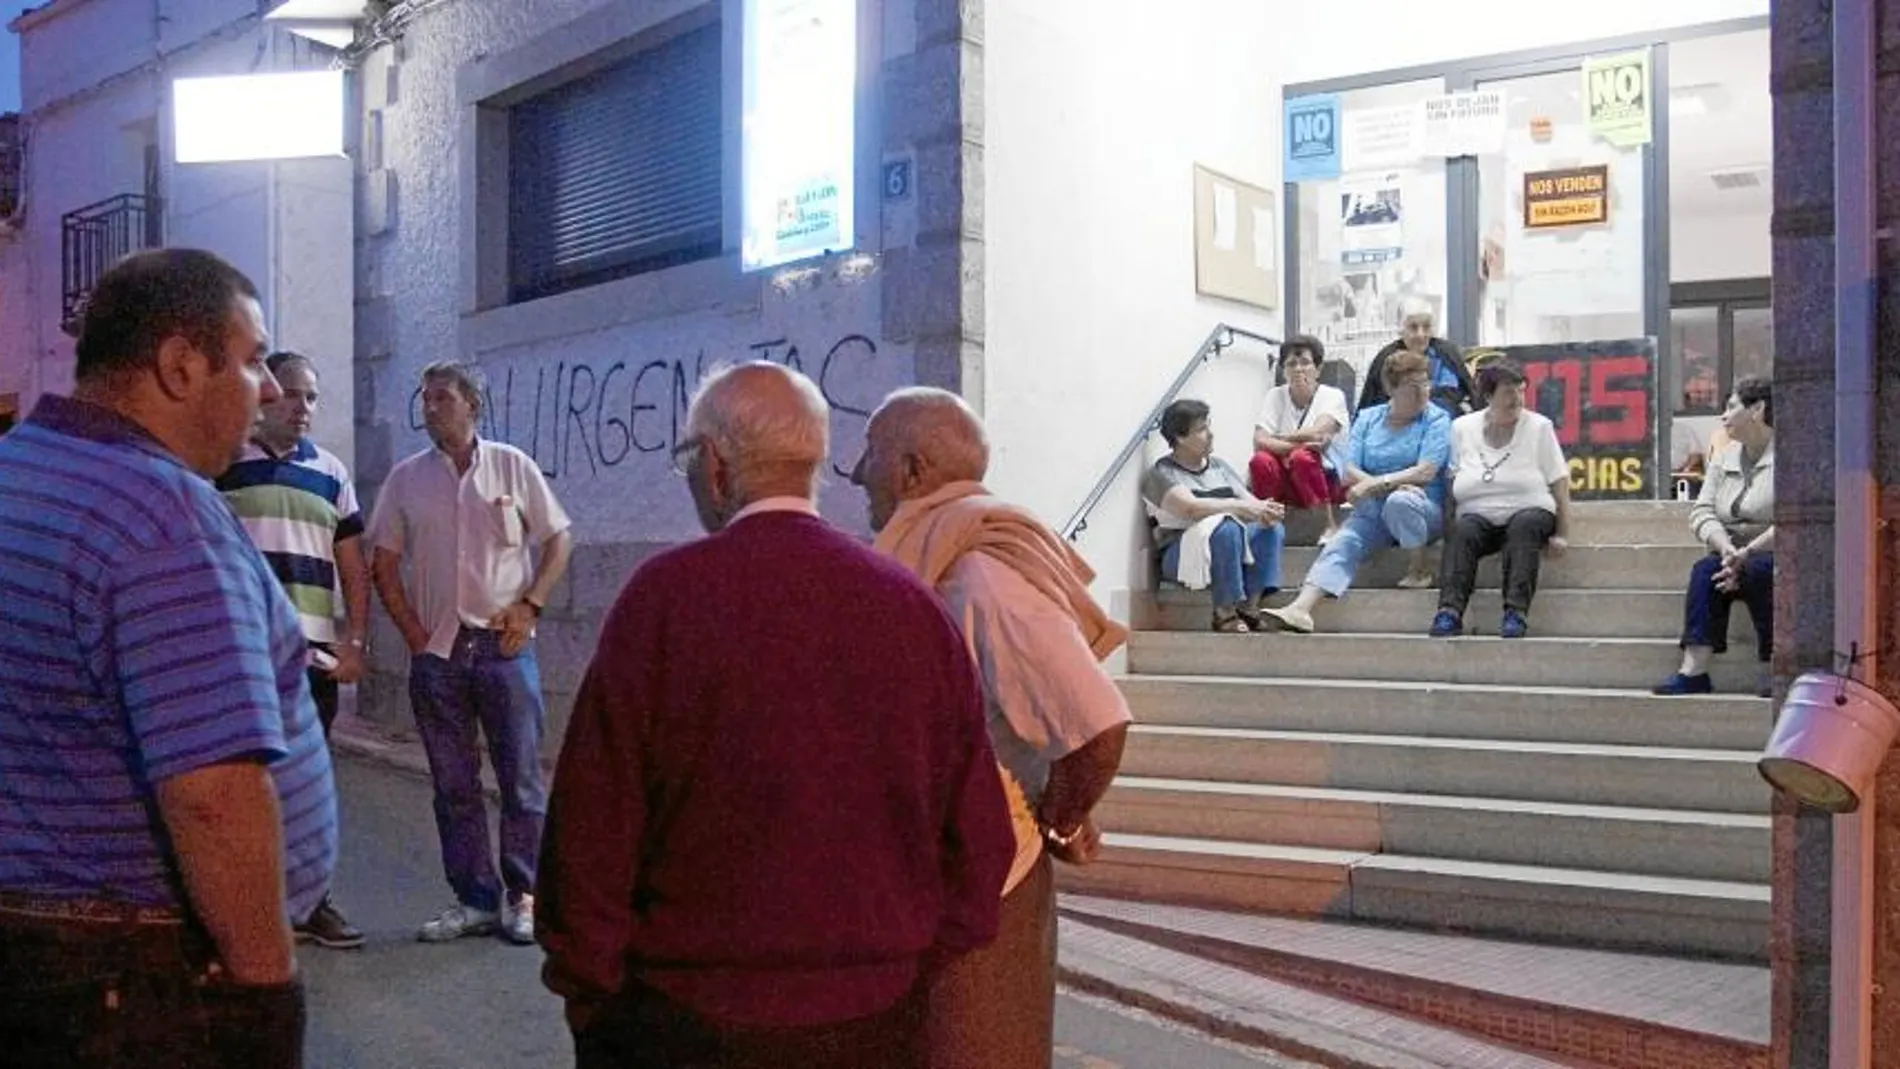 Vecinos de Villarino de los Aires protestan por el cierre de urgencias nocturnas. La presión vecinal ha sido vital para que se reabra el servicio